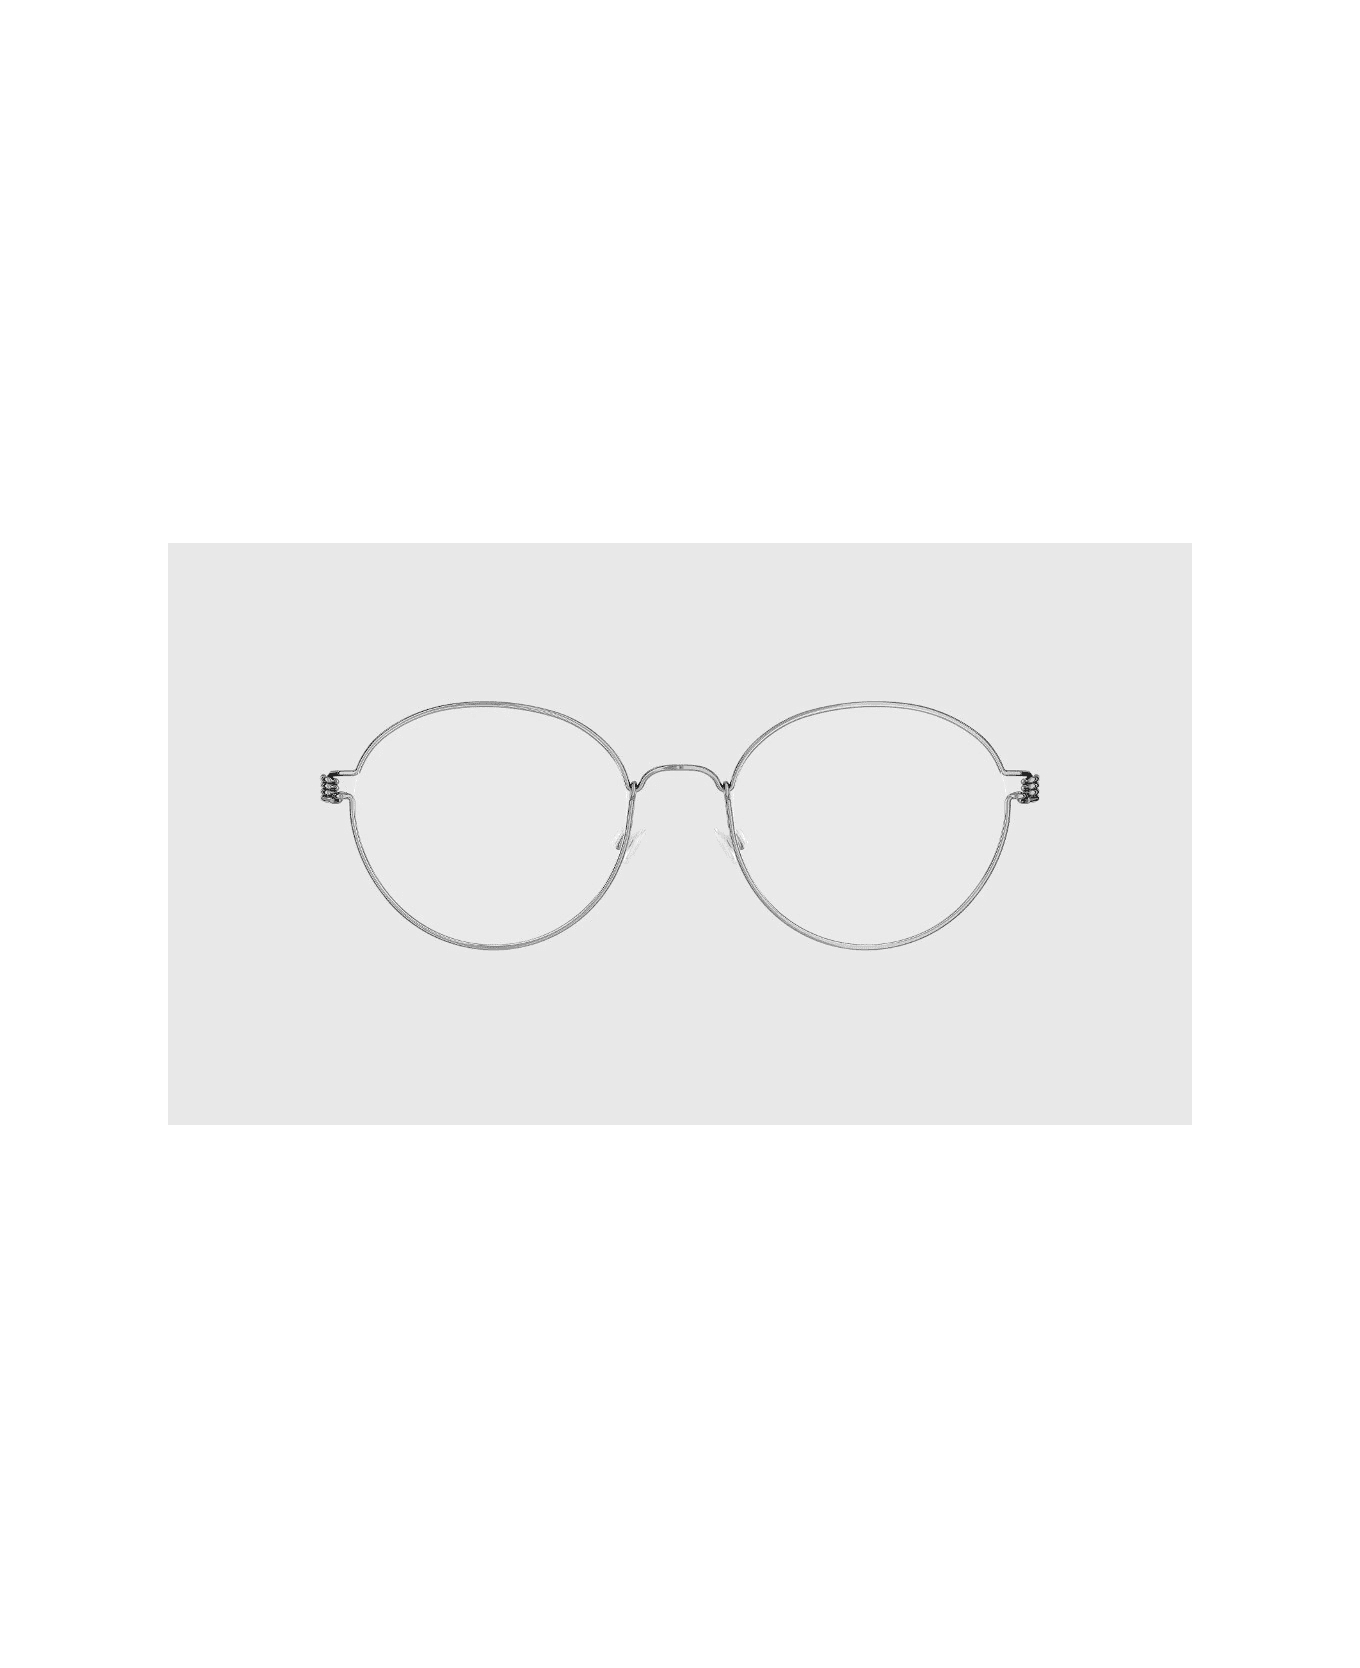 LINDBERG Panto 10 48 Glasses - Silver アイウェア